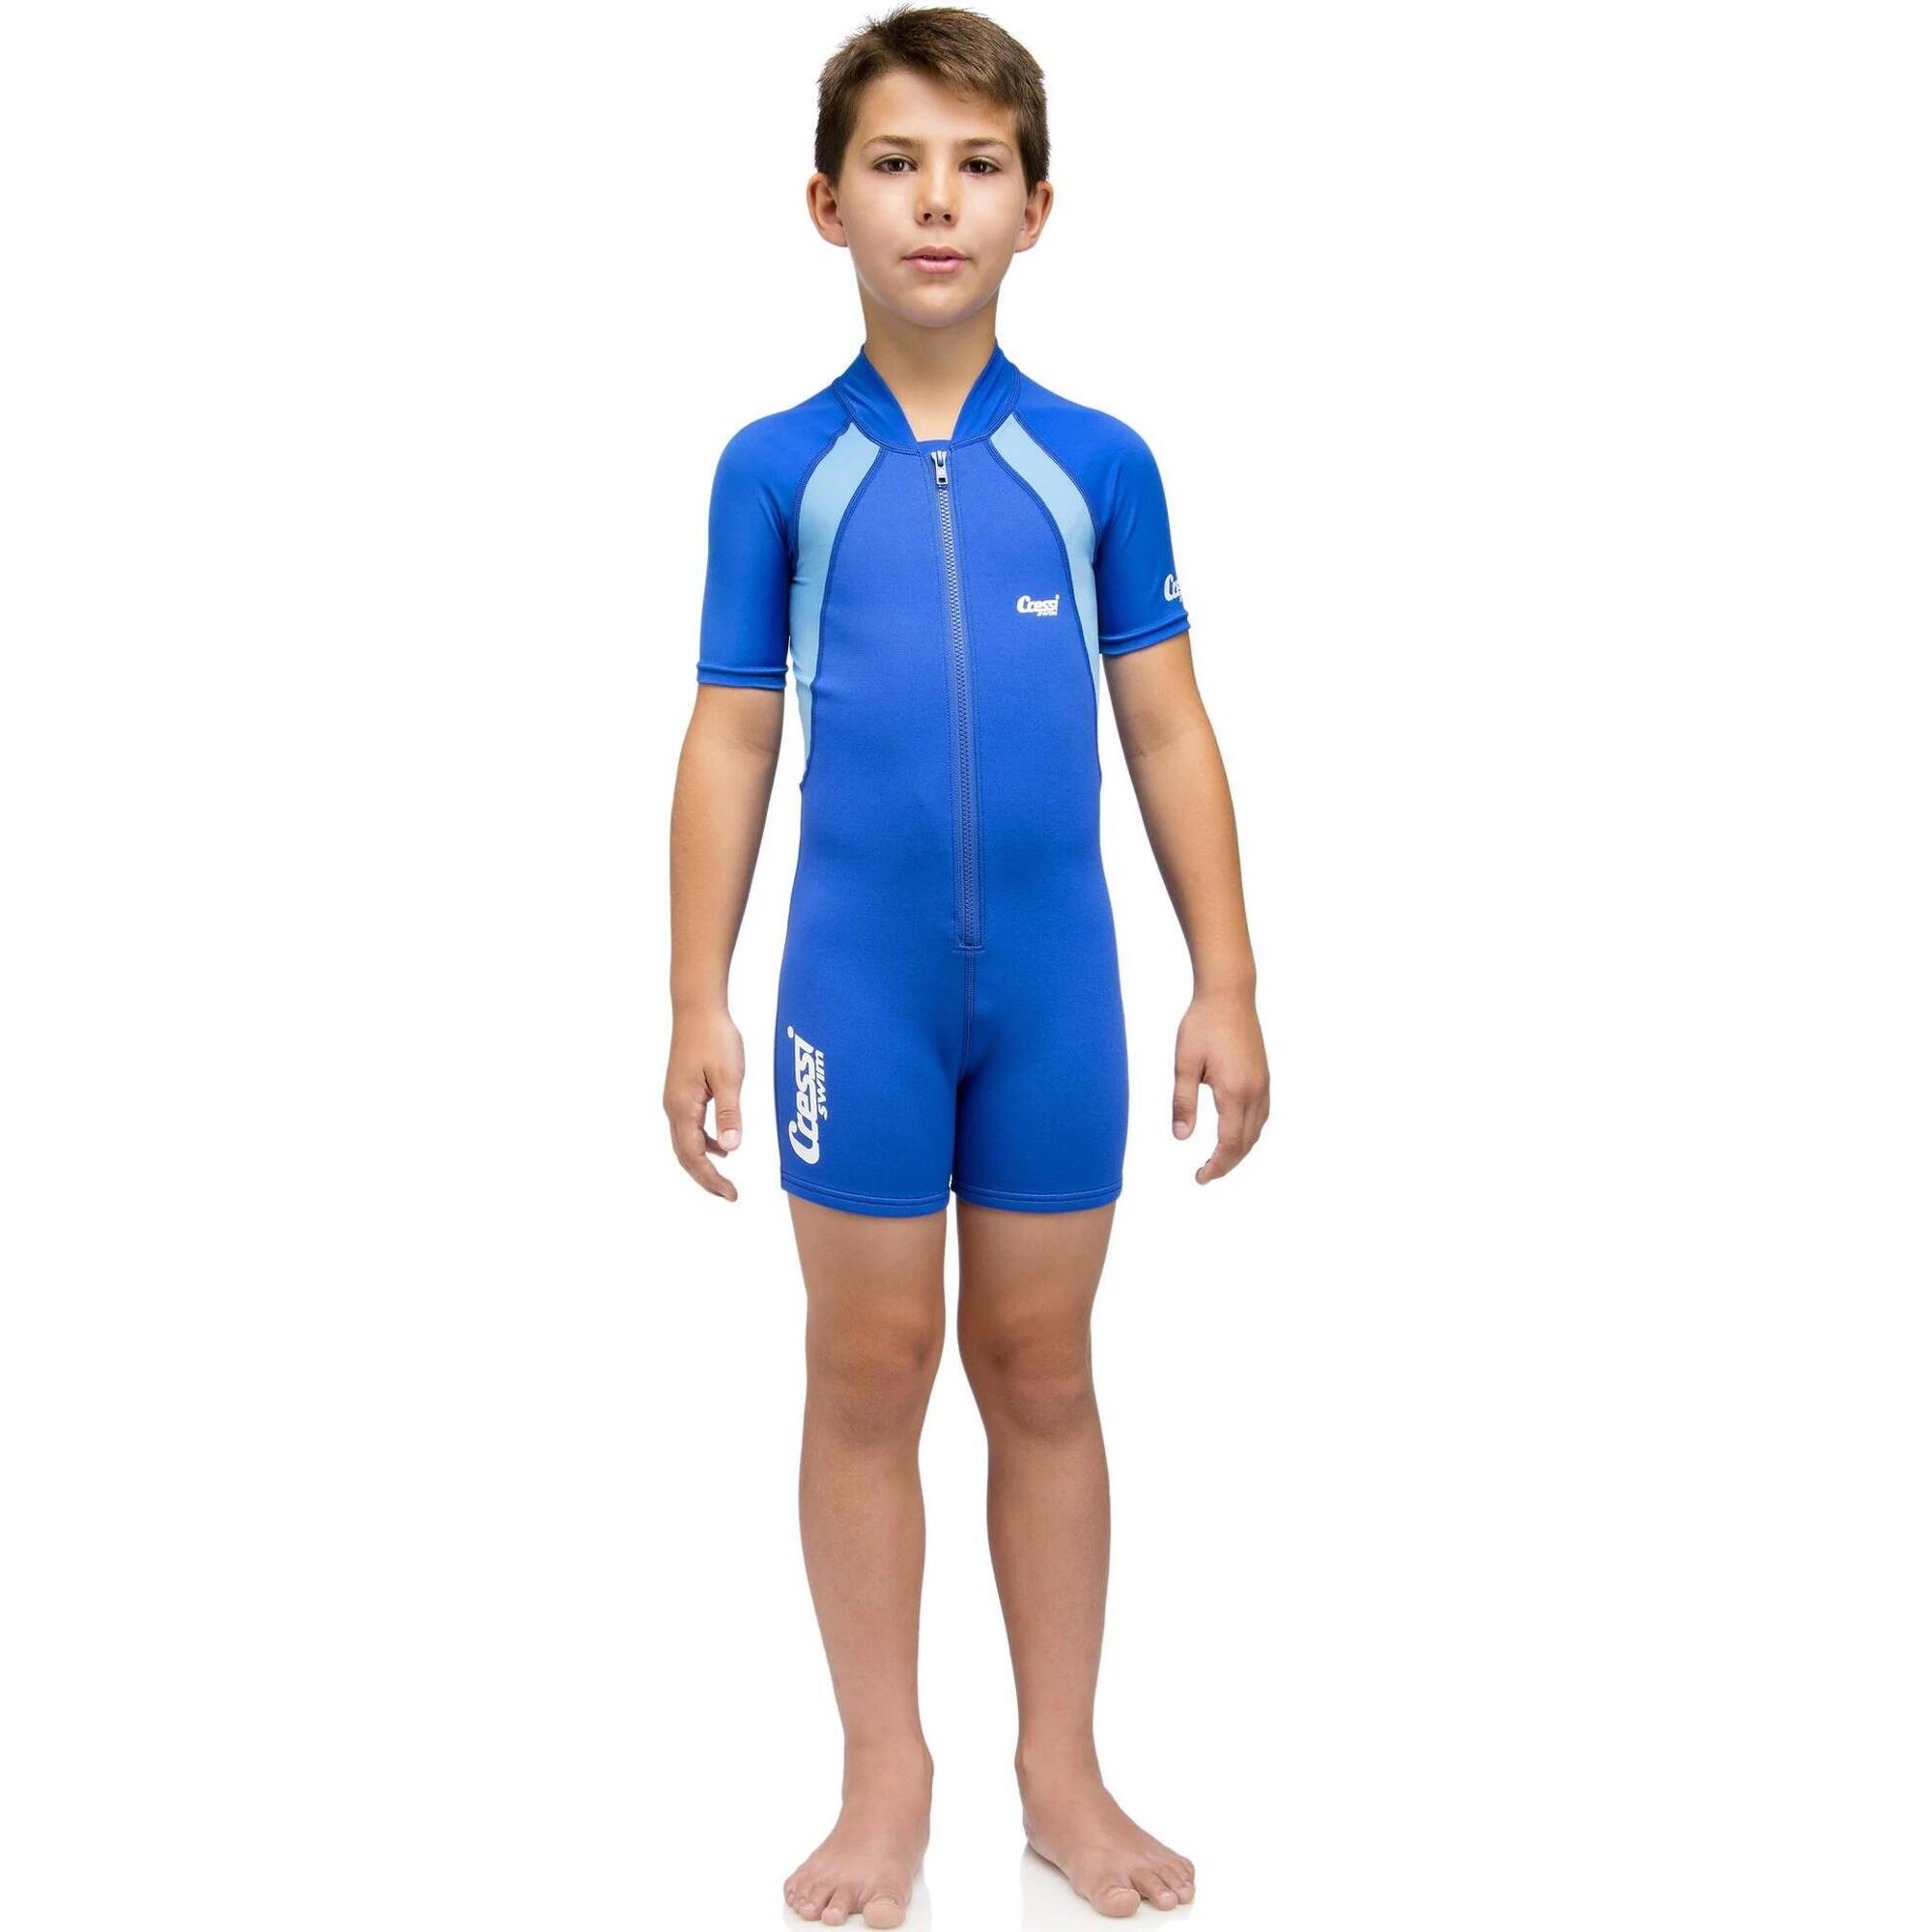 兒童泳衣短款 1.5mm - 藍色 - M